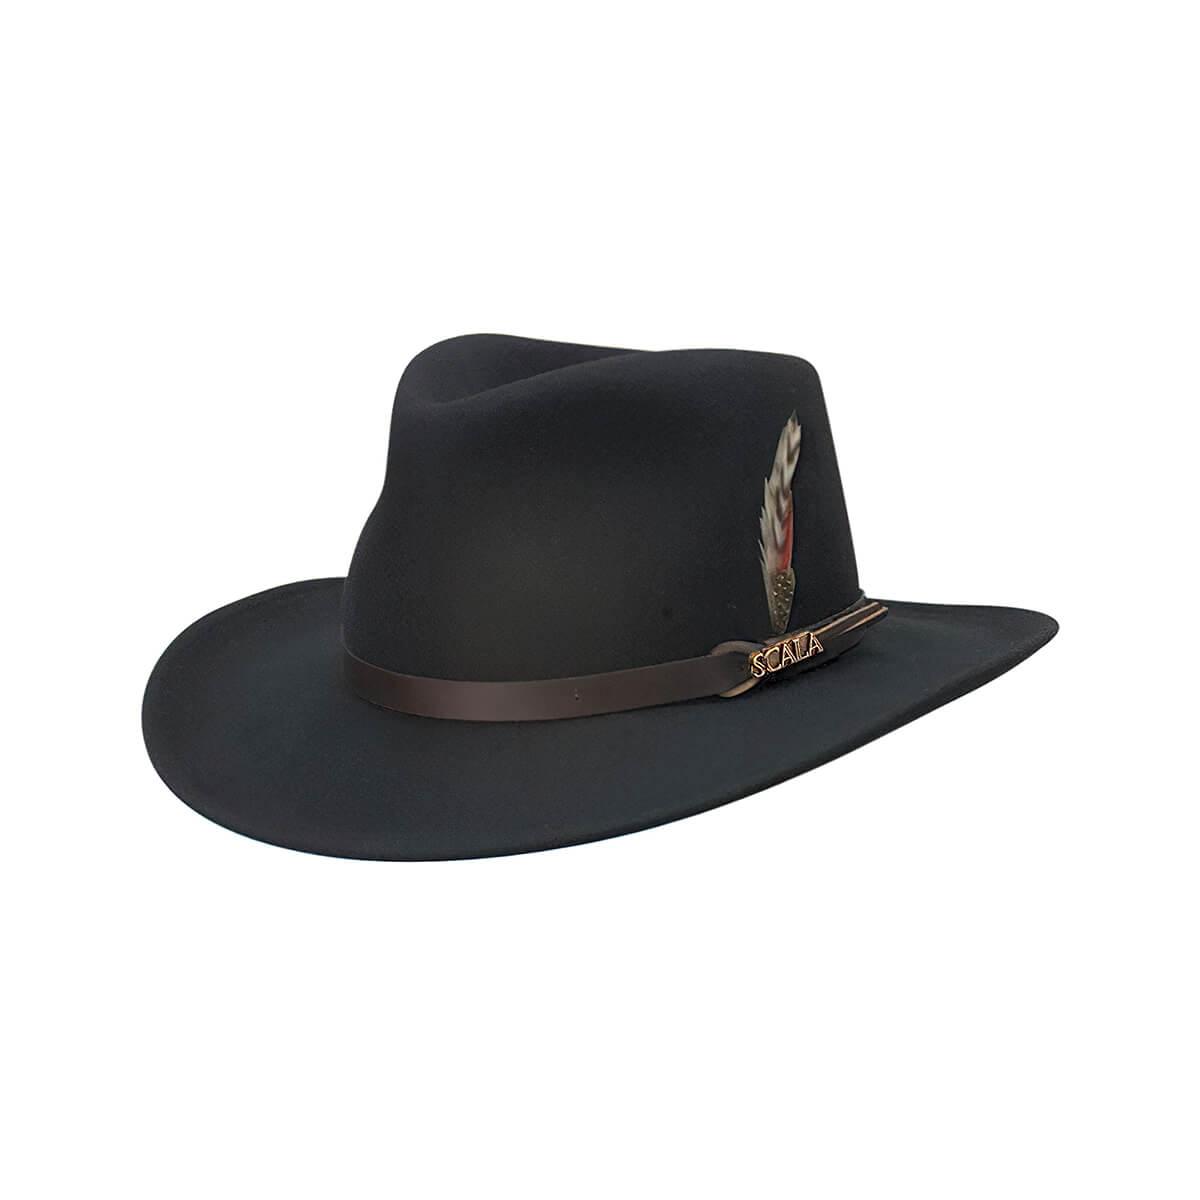  Men's Dakota Wool Outback Hat